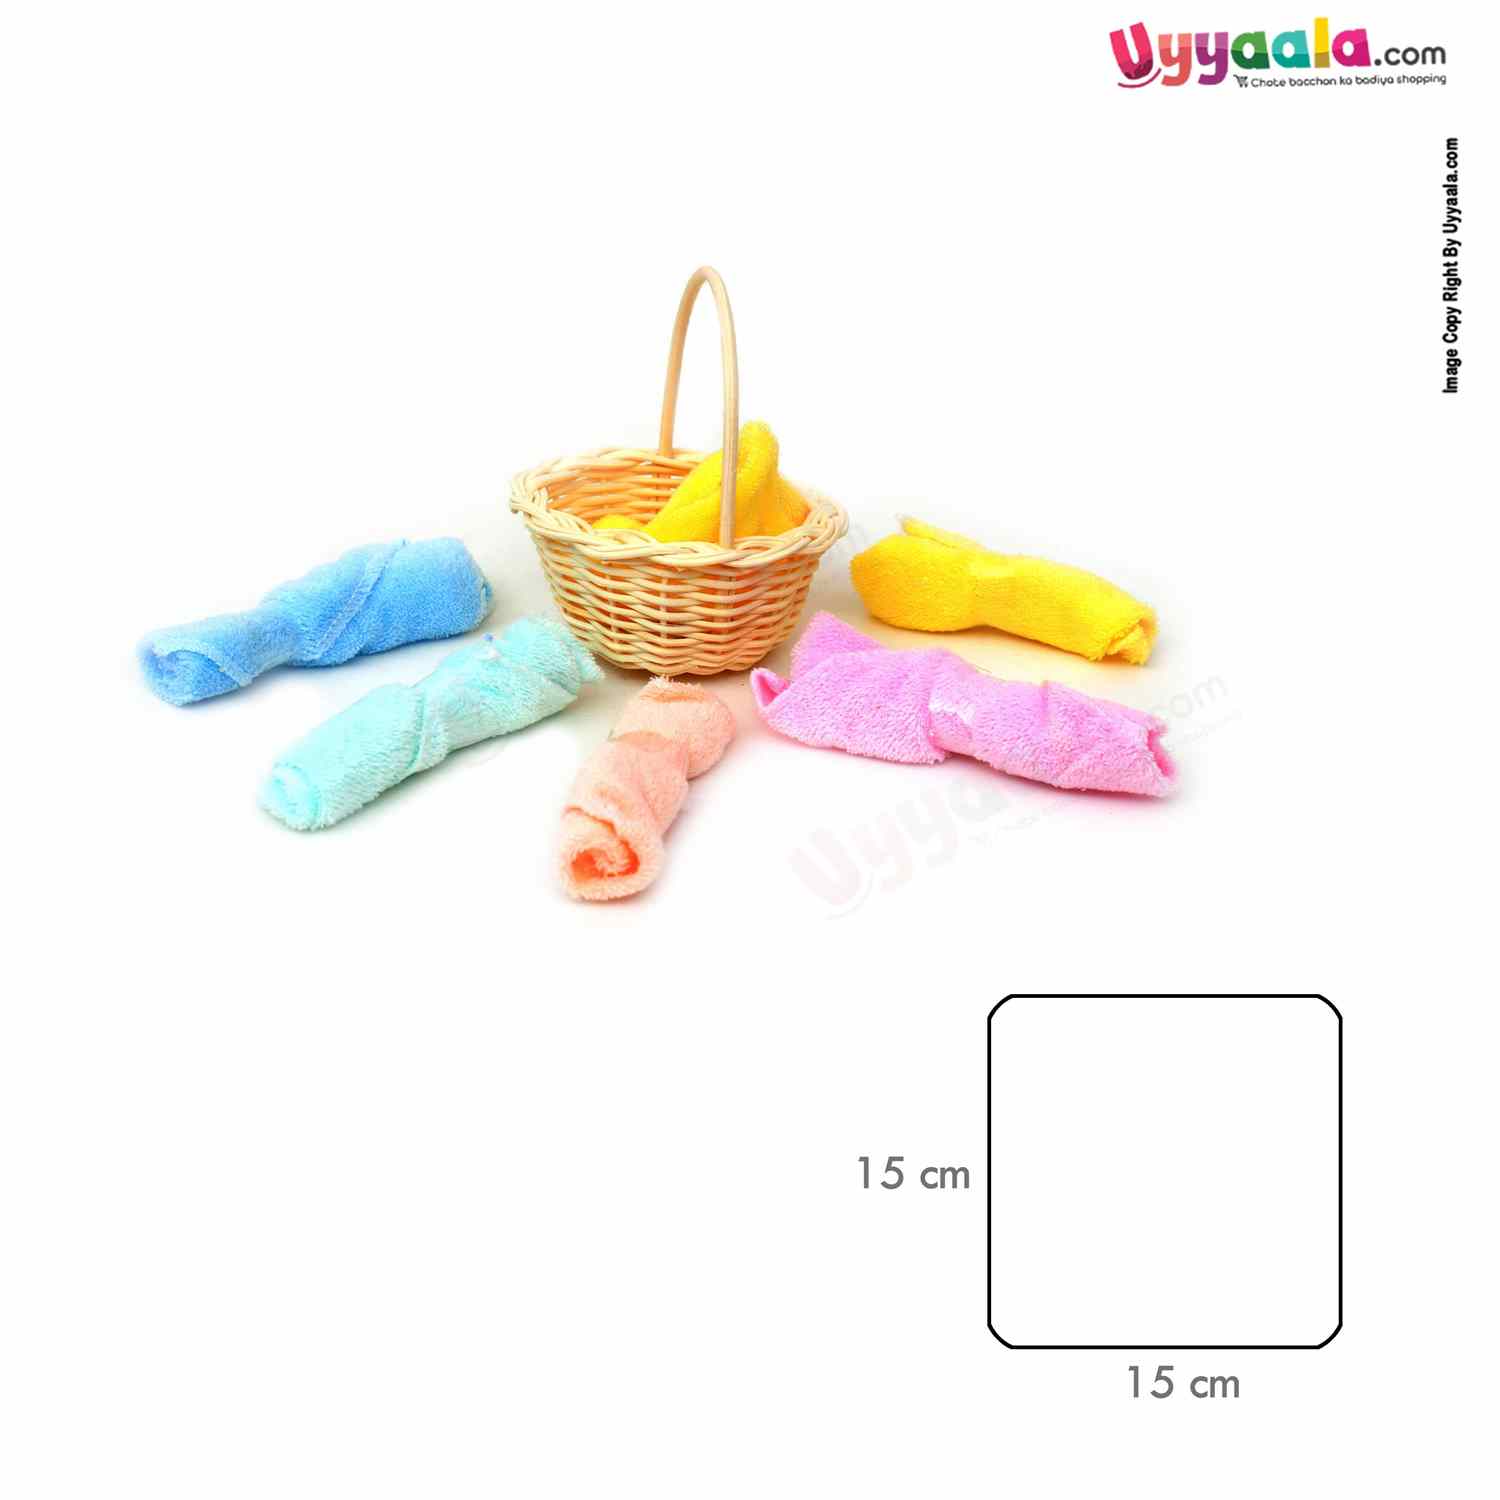 KIDS LAND FASHION Napkins ( Wash Cloth ) Basket 6pc Set 0+m Age, Size (15*15 cm) - Multi Color